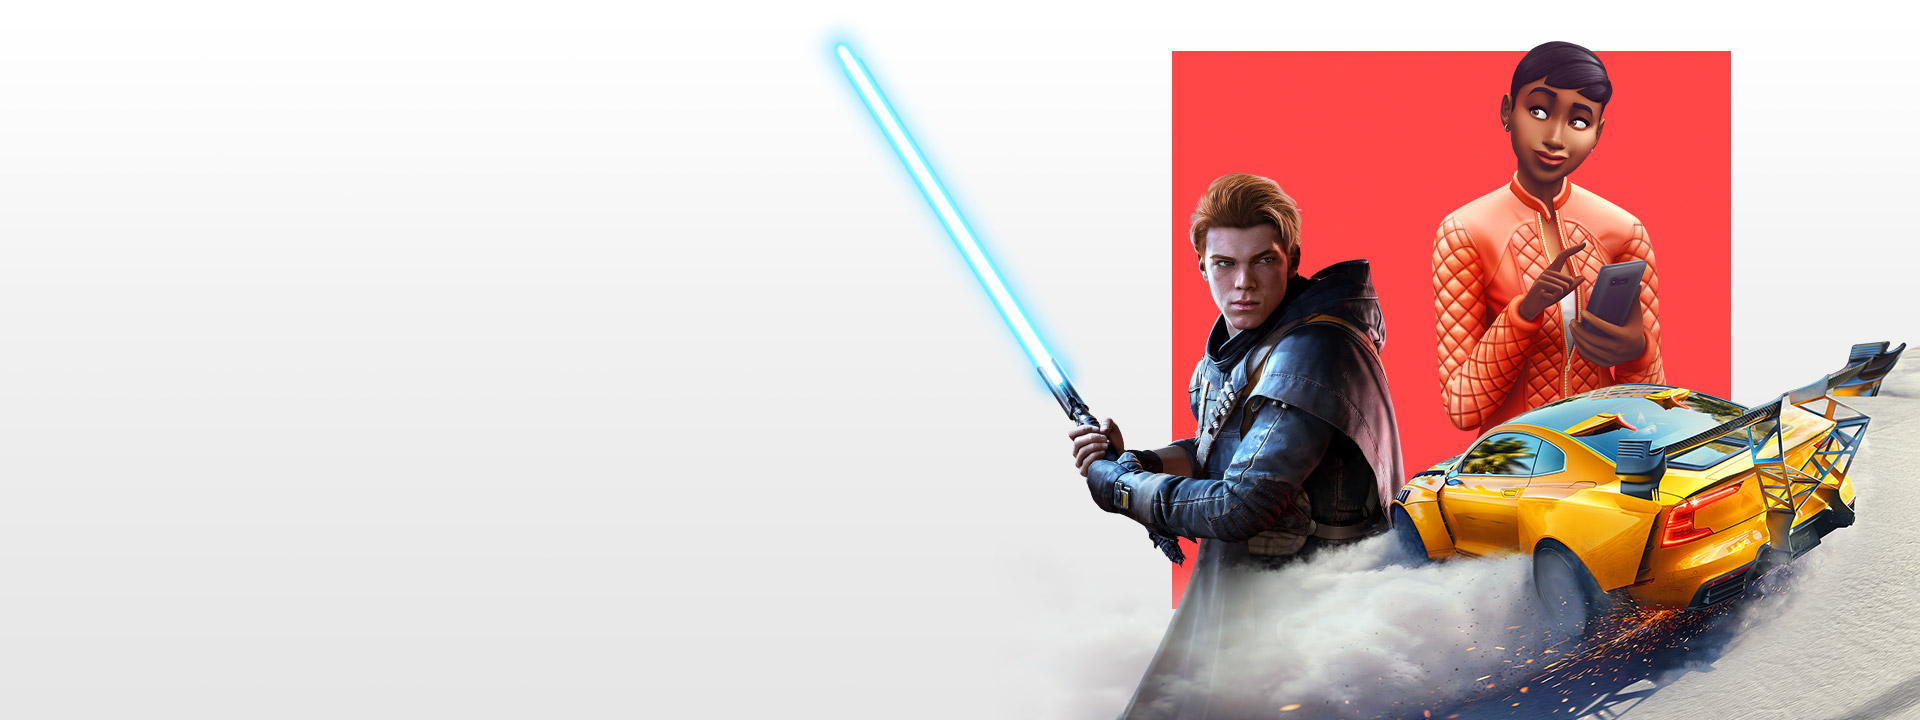 Un conjunto de personajes de distintos juegos de EA, como Star Wars Jedi: Fallen Order, Los Sims 4 y Need for Speed Heat.